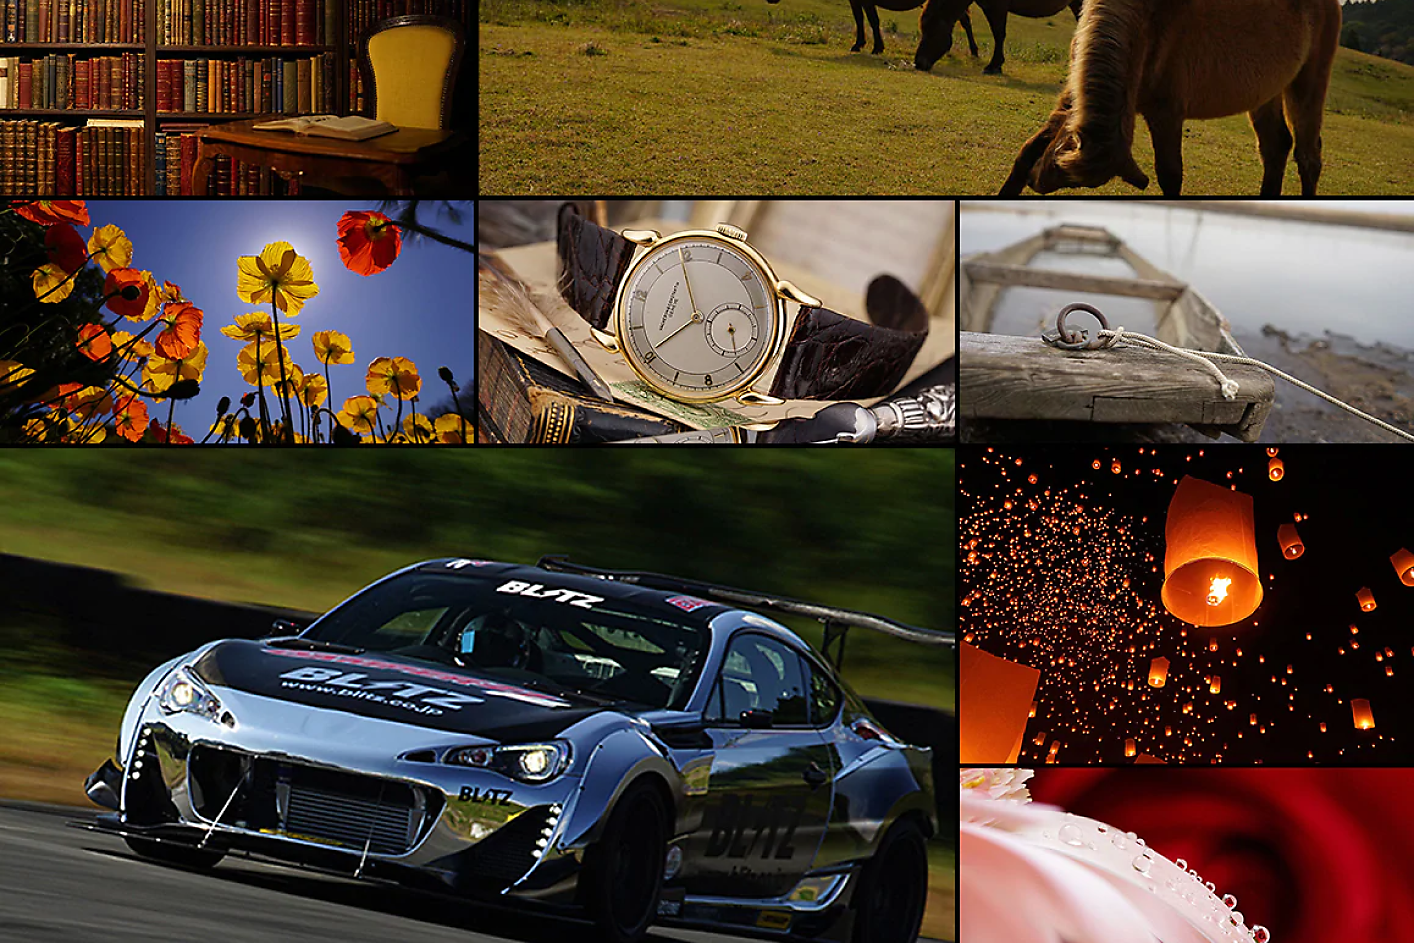 Kolase berwarna delapan gambar, termasuk mobil balap, kuda, jam tangan, dan bunga